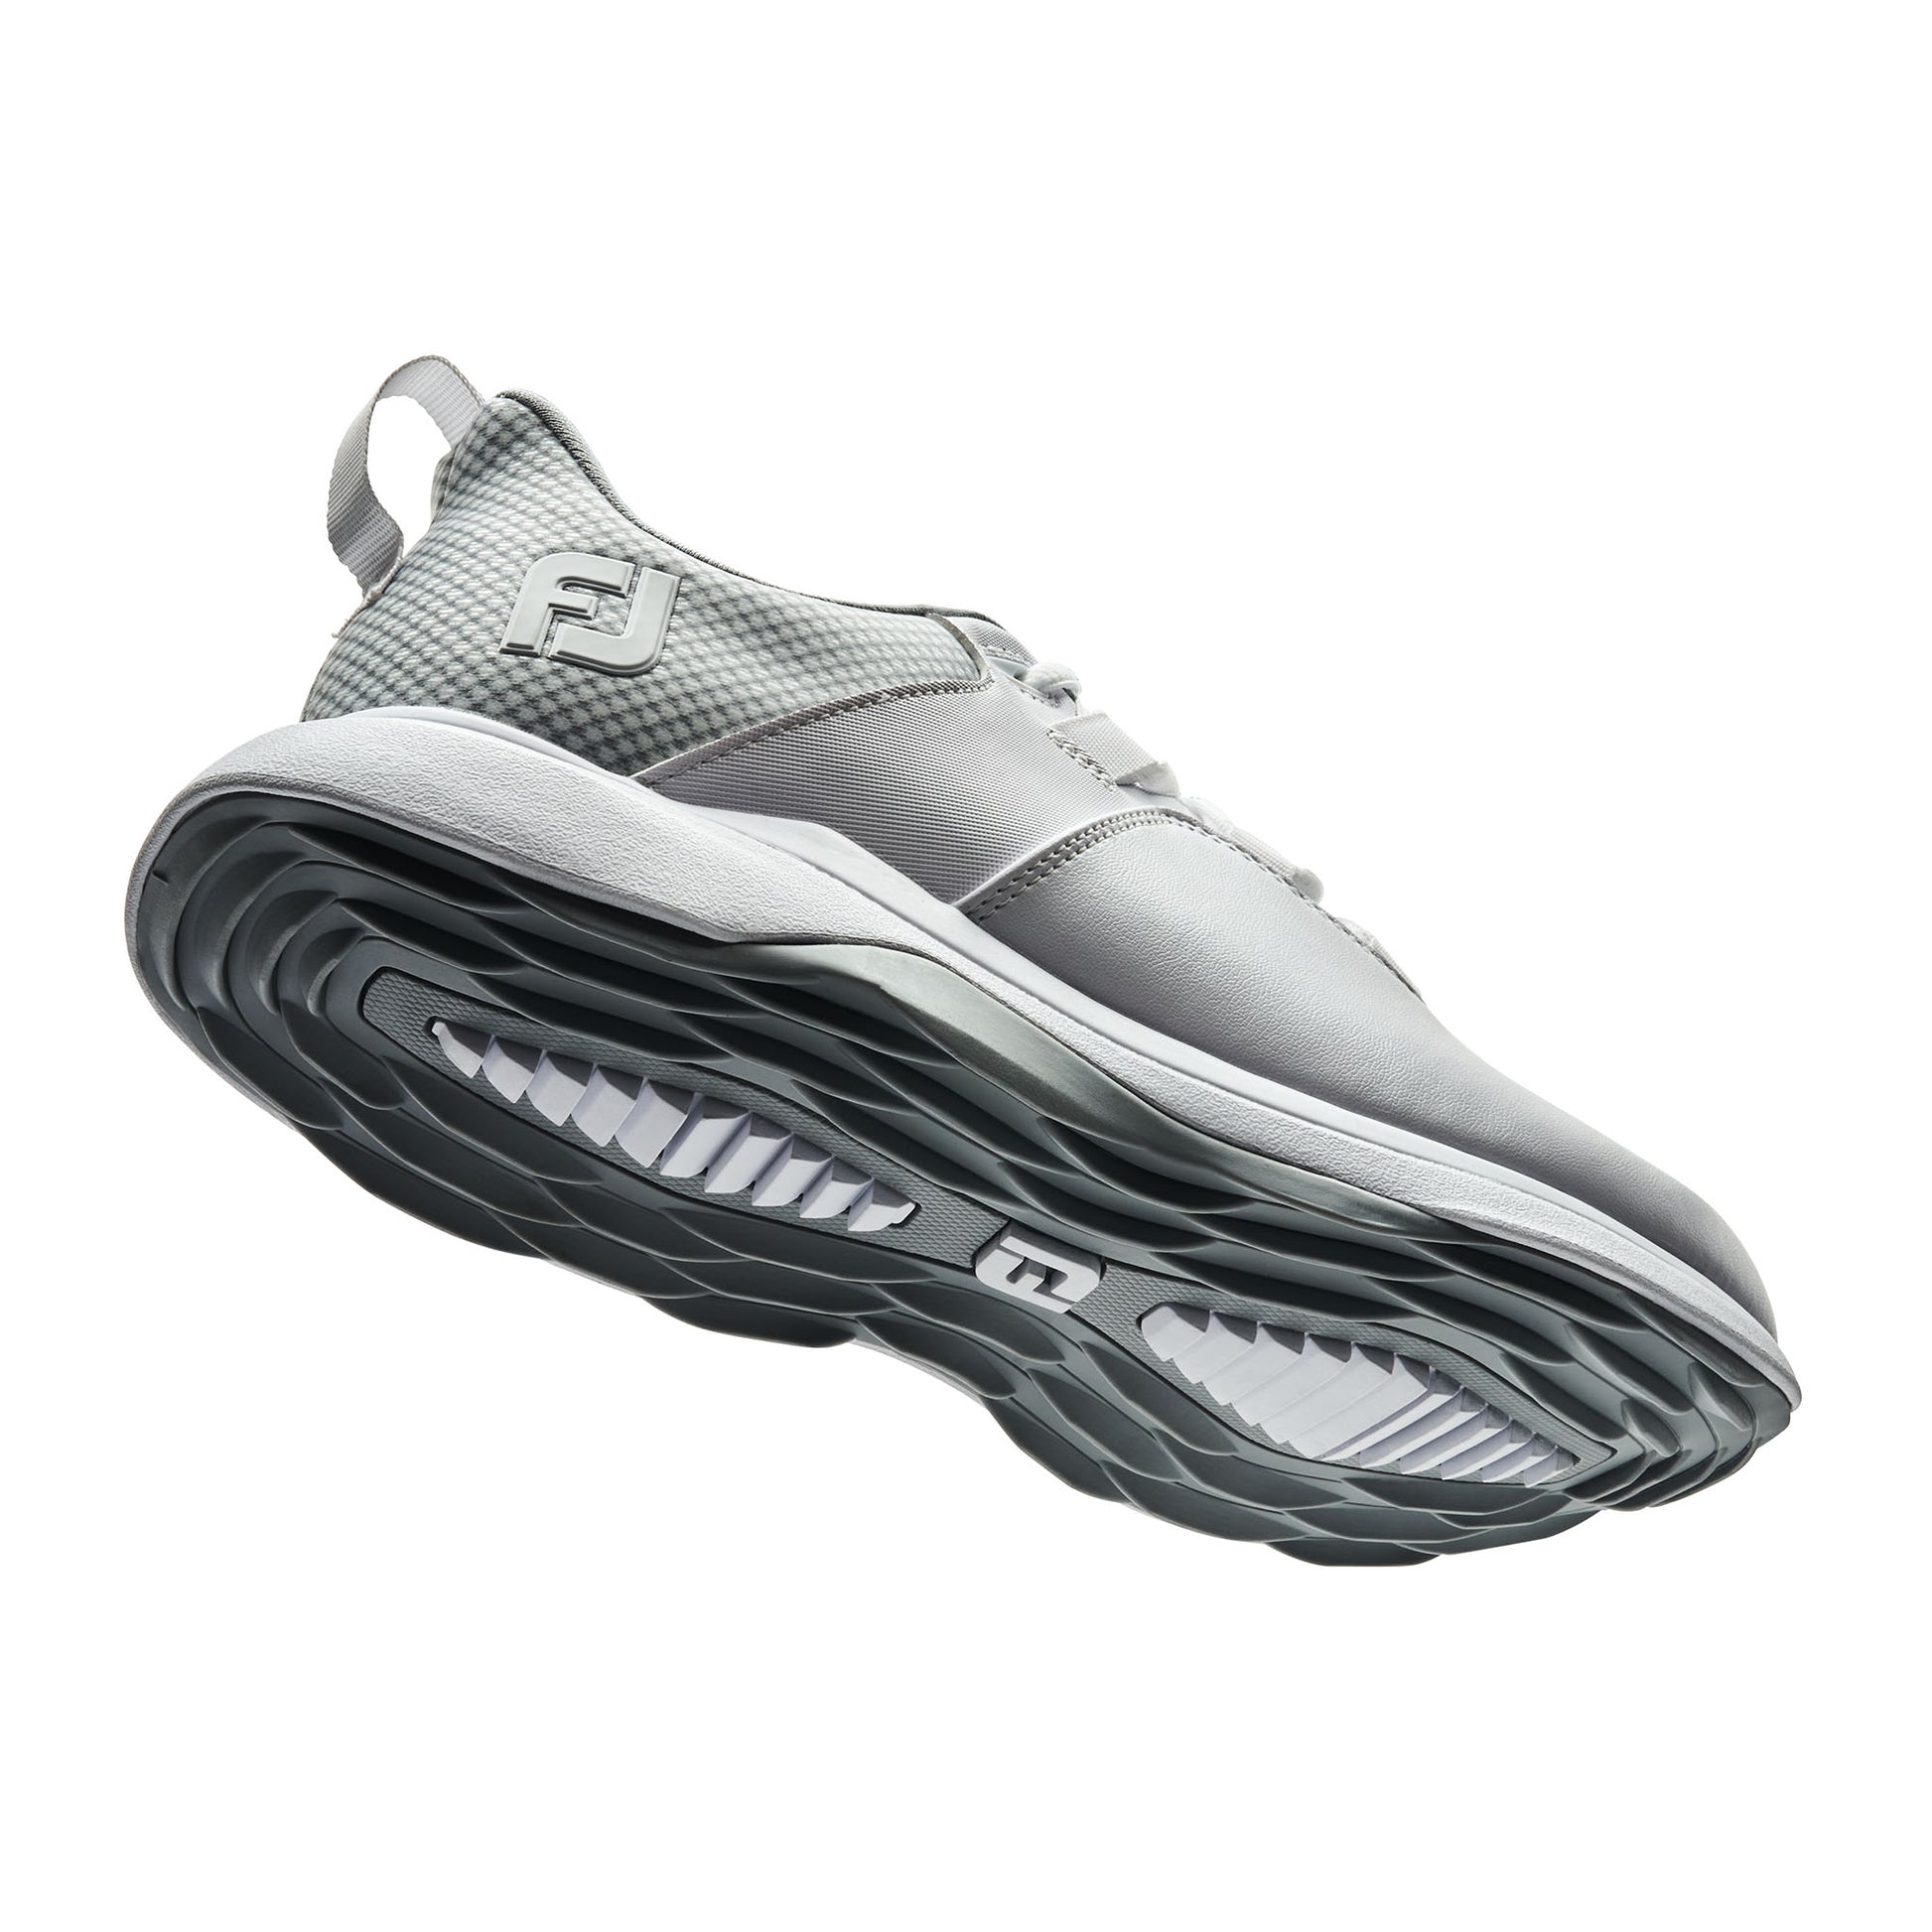 FootJoy Women's ProLite Waterproof Golf Shoes in White, Grey & Light Grey